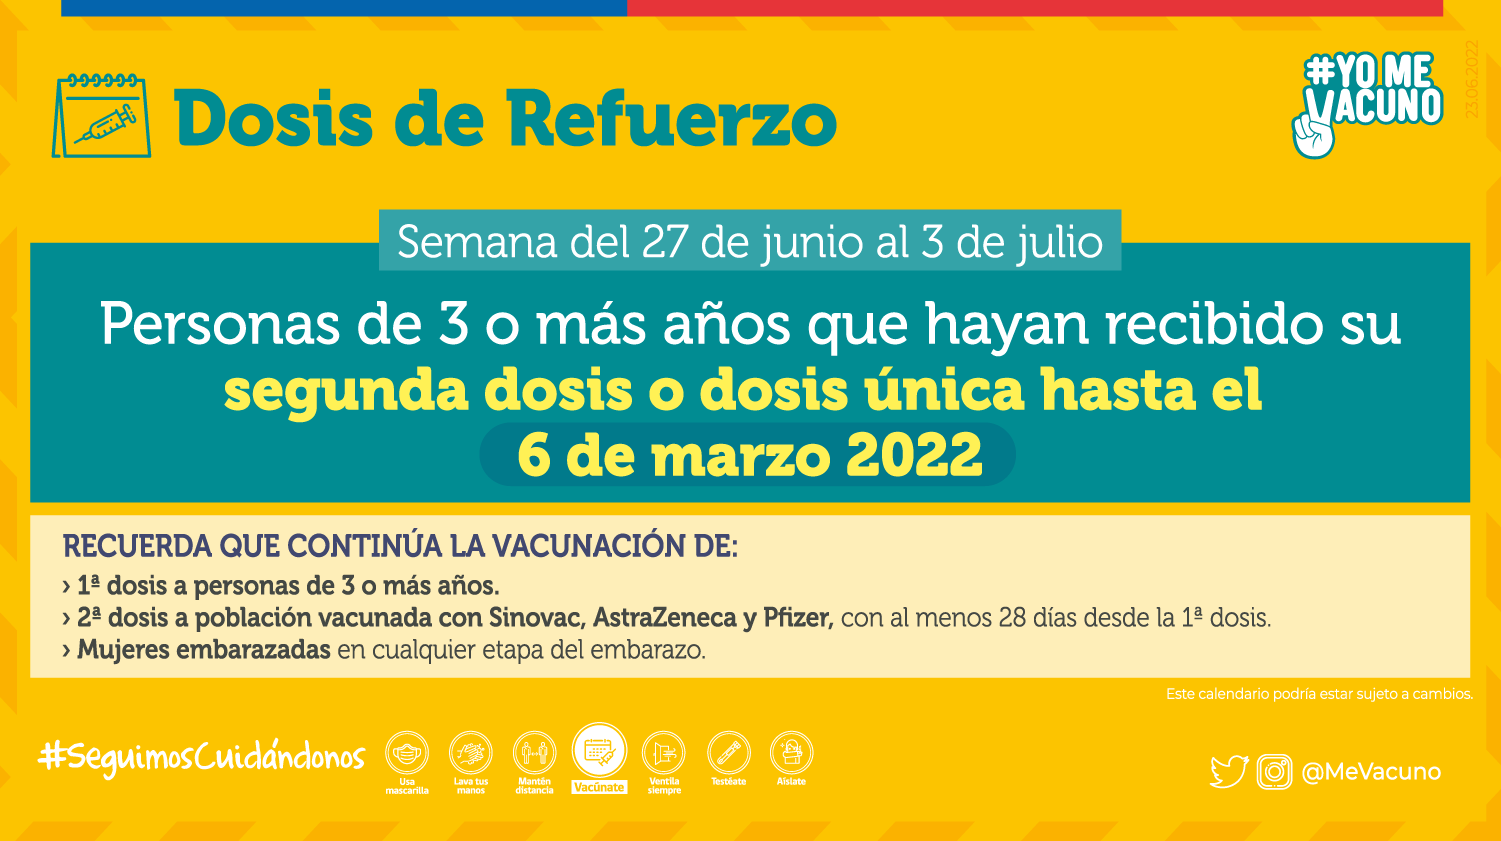 Calendario Vacunacion 27 Junio Refuerzo